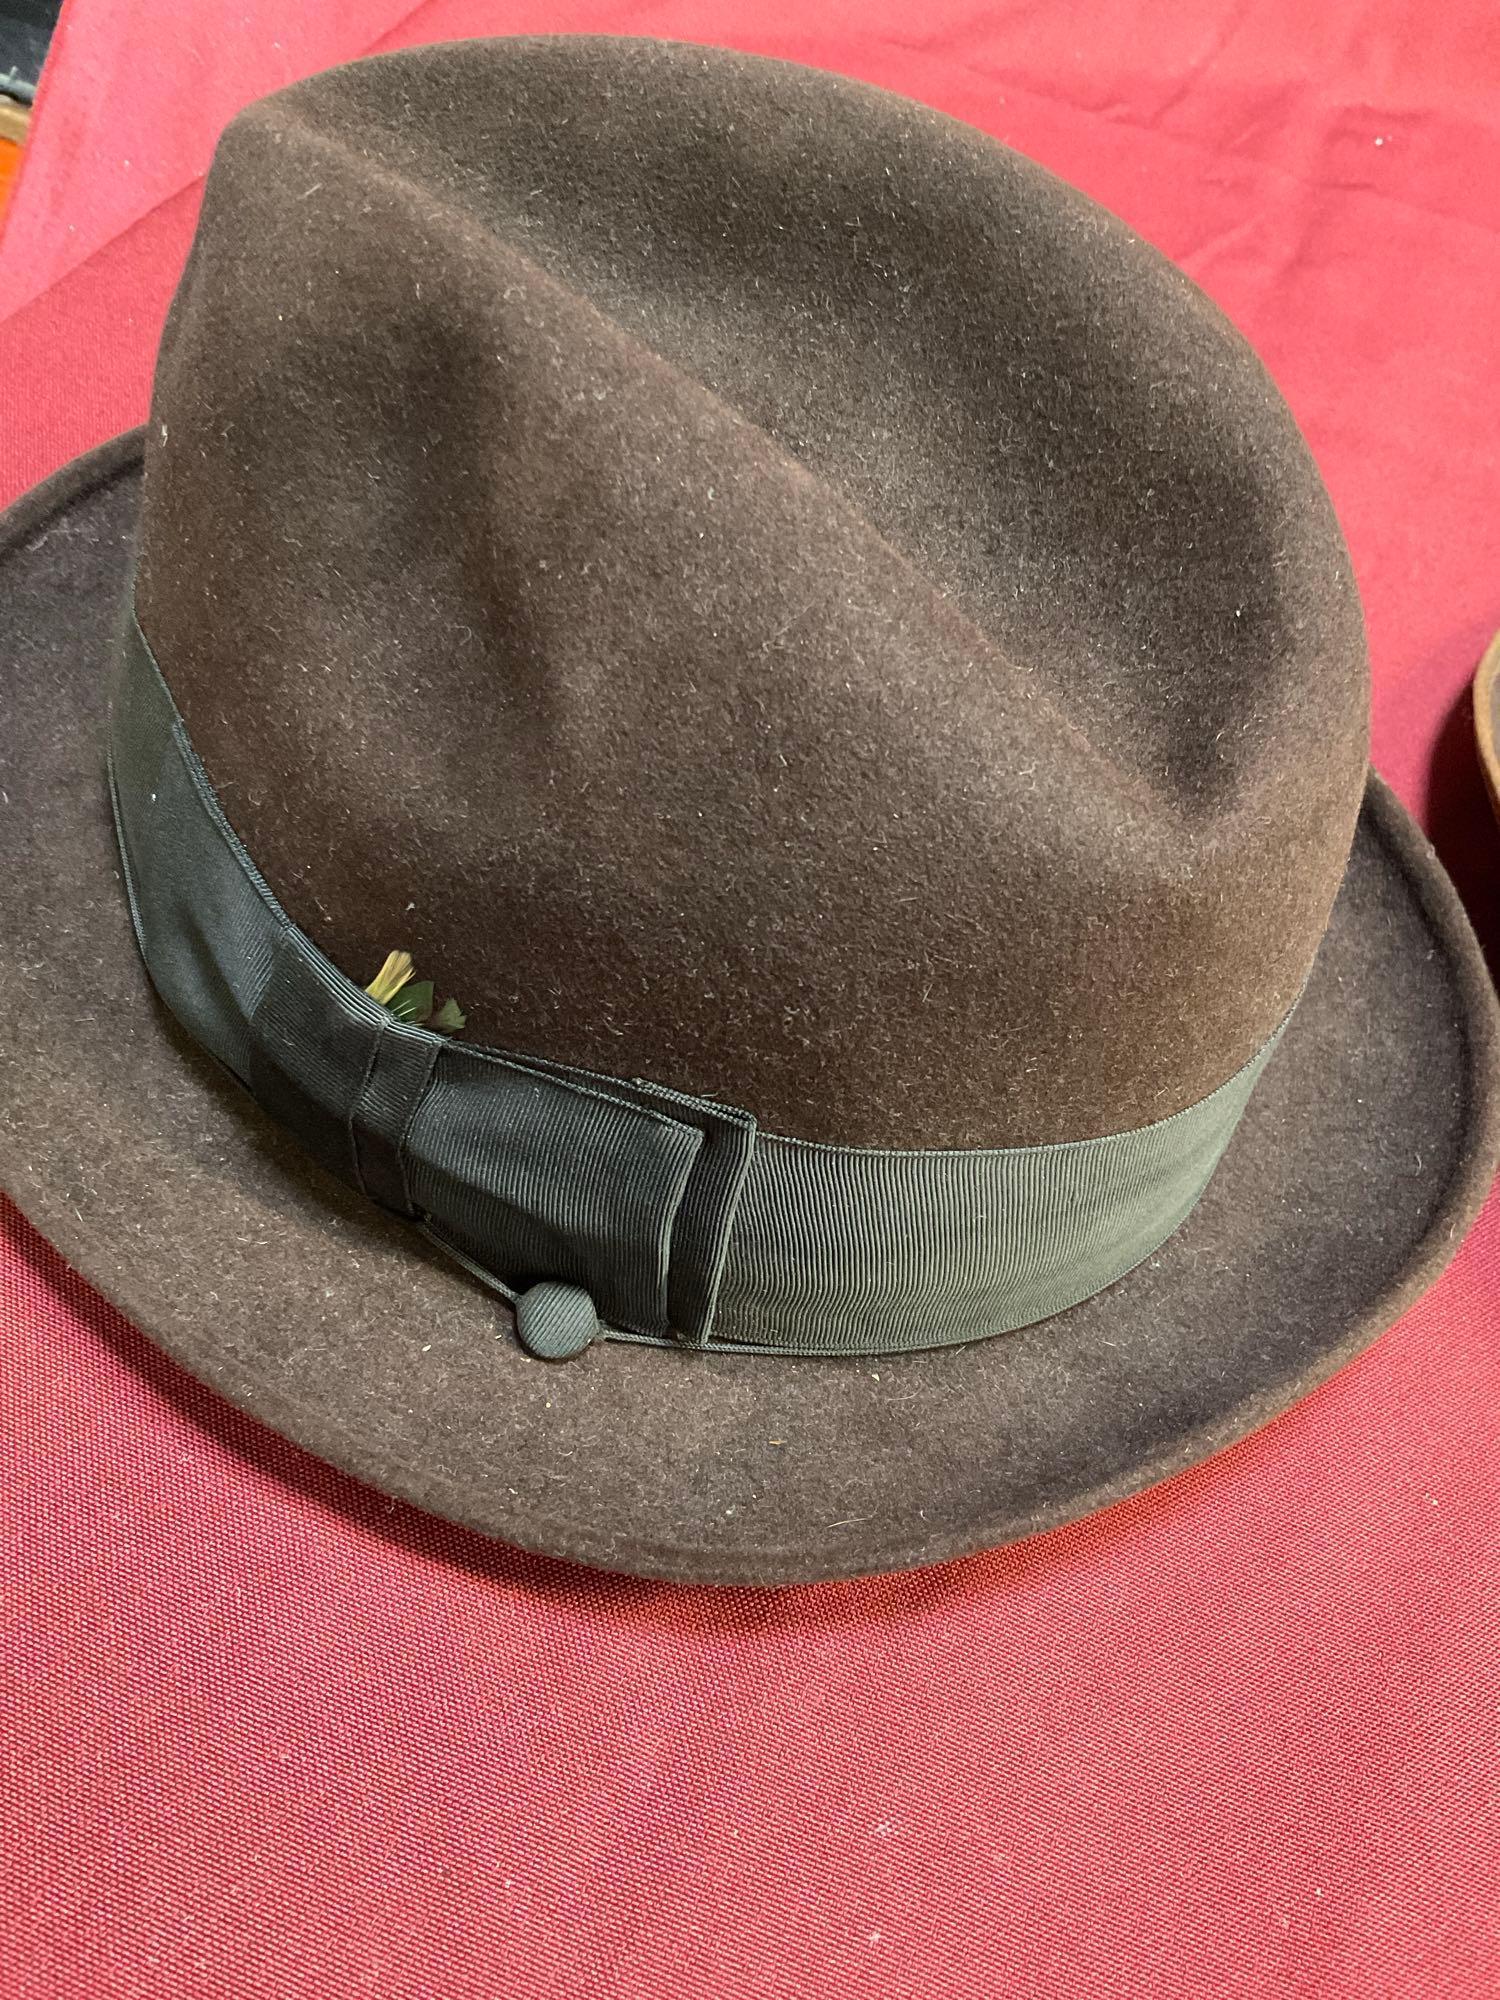 Francato Cappello & Eddy Bros hats. 2 pieces